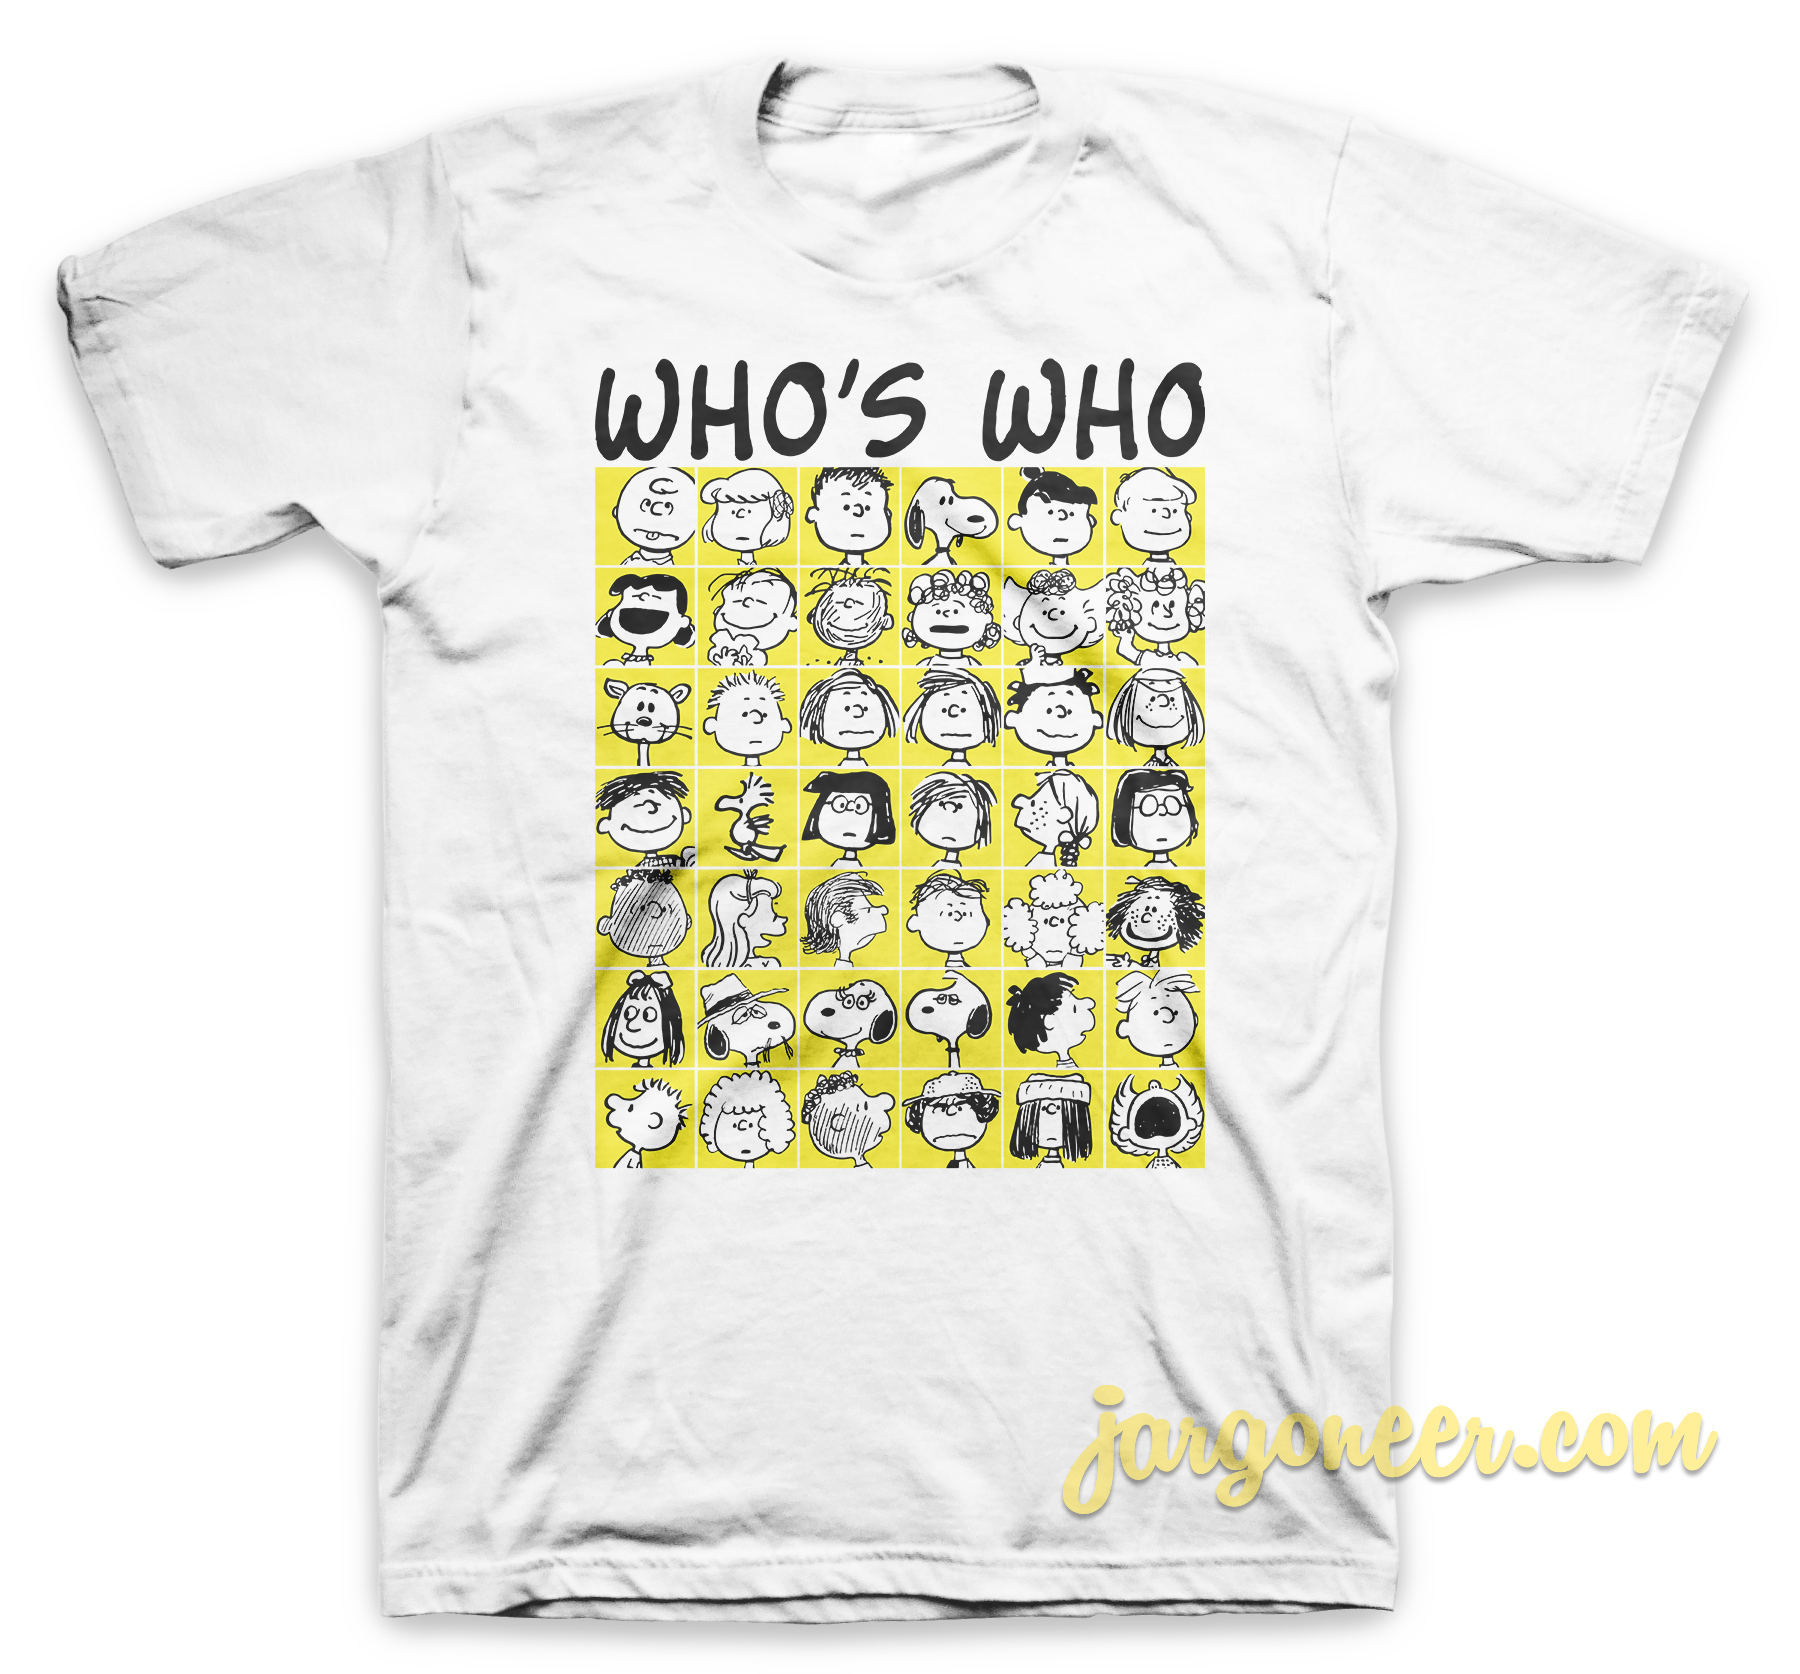 Whos Who White T Shirt - Shop Unique Graphic Cool Shirt Designs